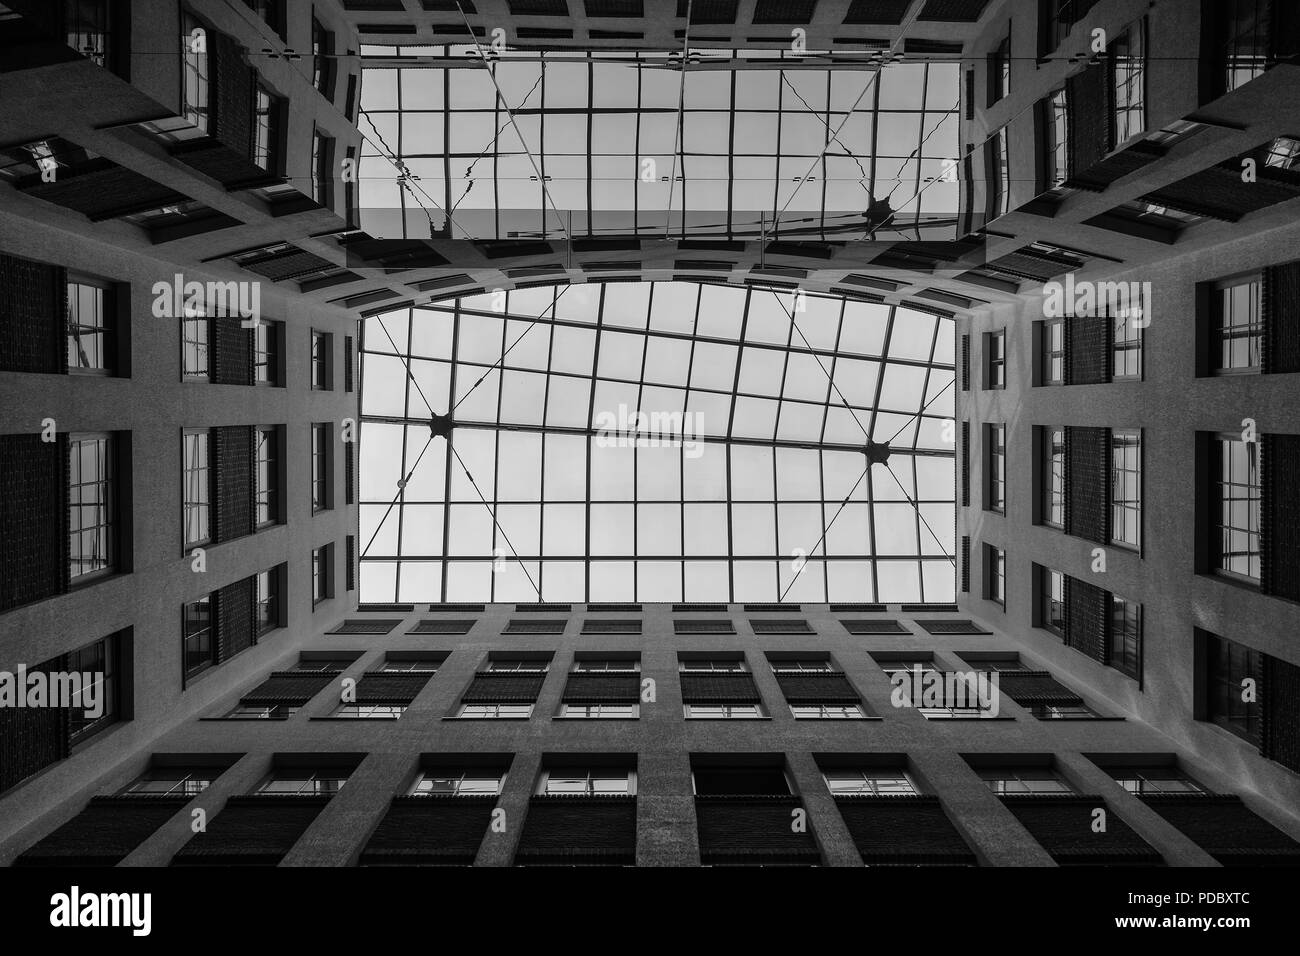 Ein Blick von Unten auf die Perspektive der Fenster eines Hauses mit einem  Glas Innenhof Dach Stockfotografie - Alamy